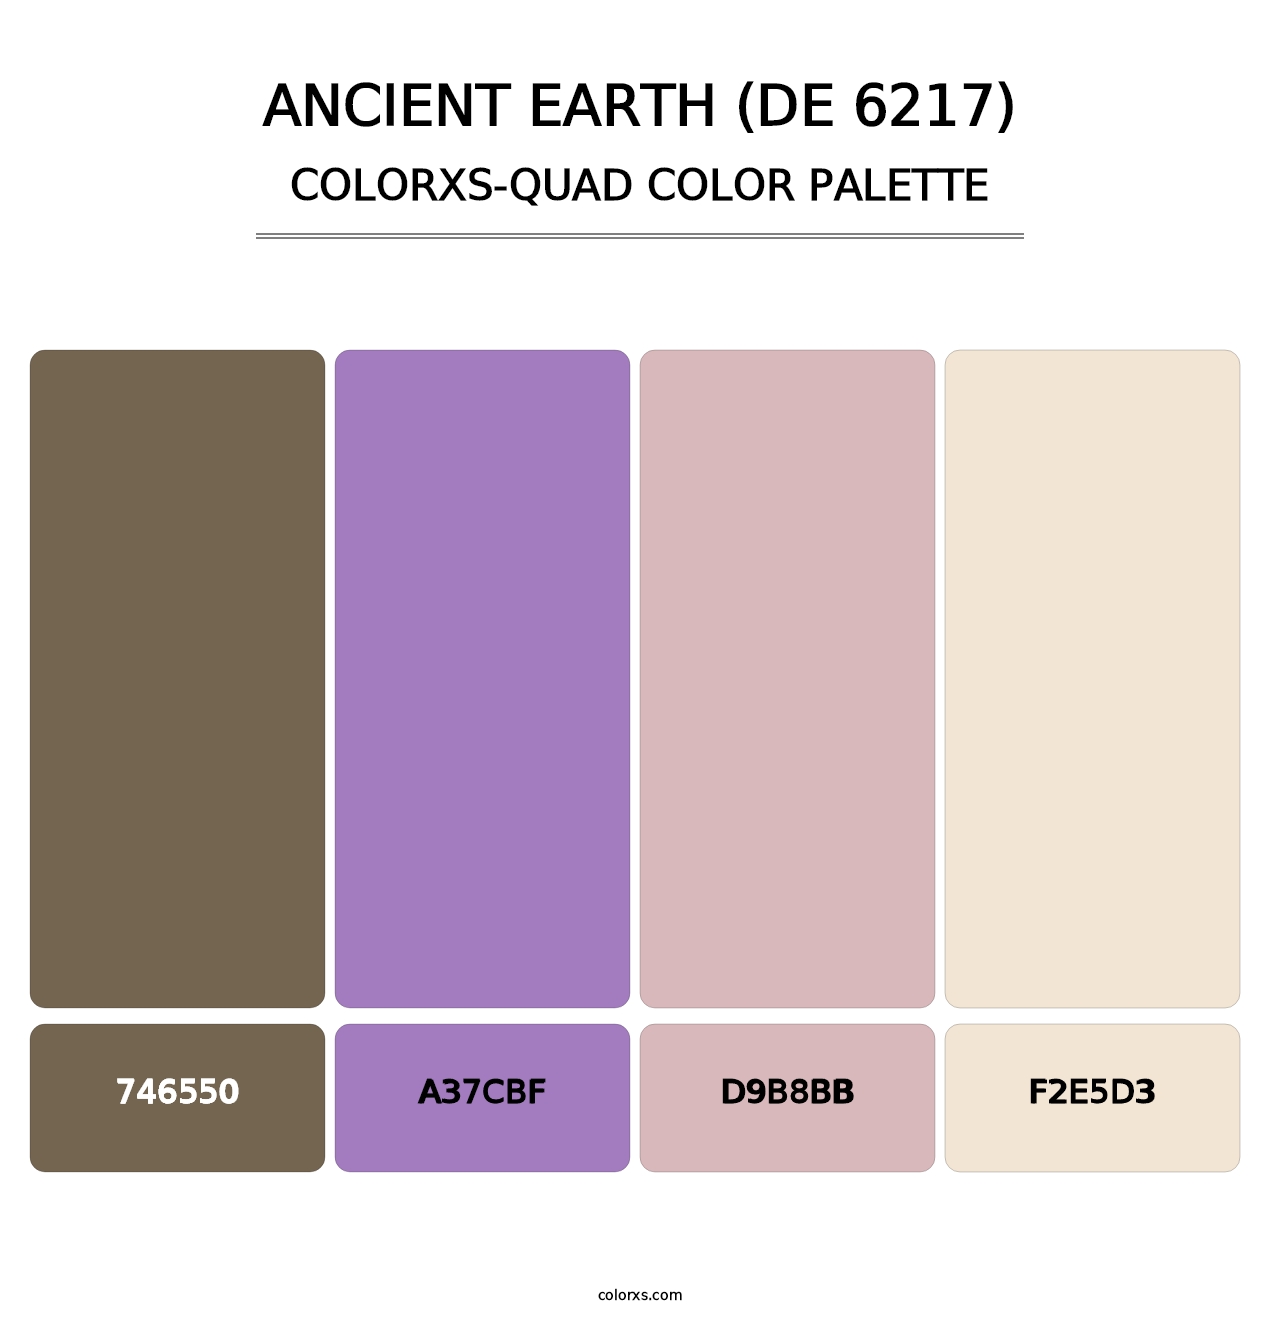 Ancient Earth (DE 6217) - Colorxs Quad Palette